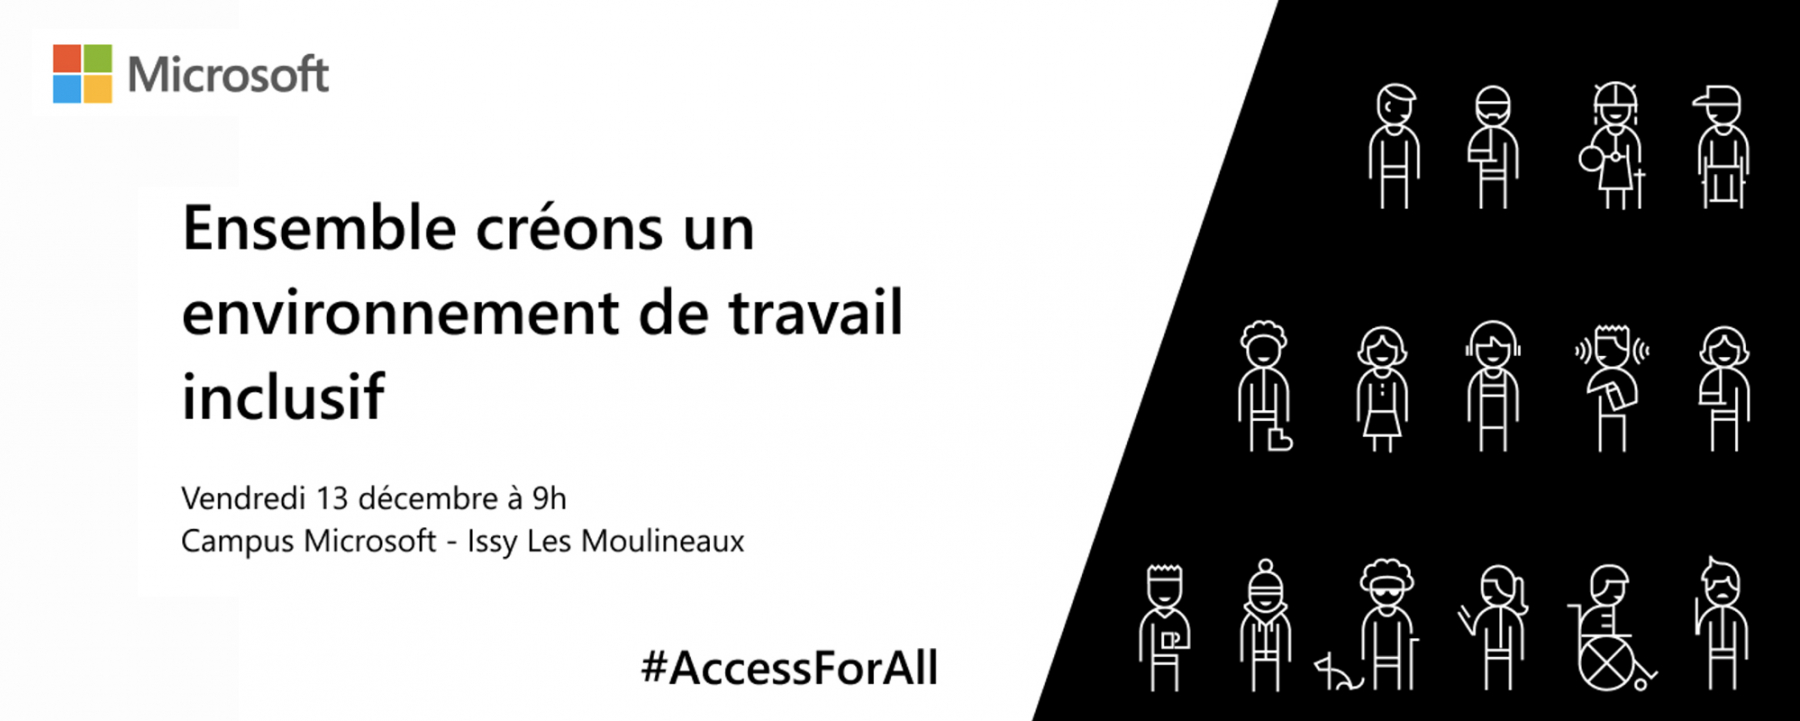 Conférence Accessibilité Microsoft 365 - inclusion dans le monde du travail